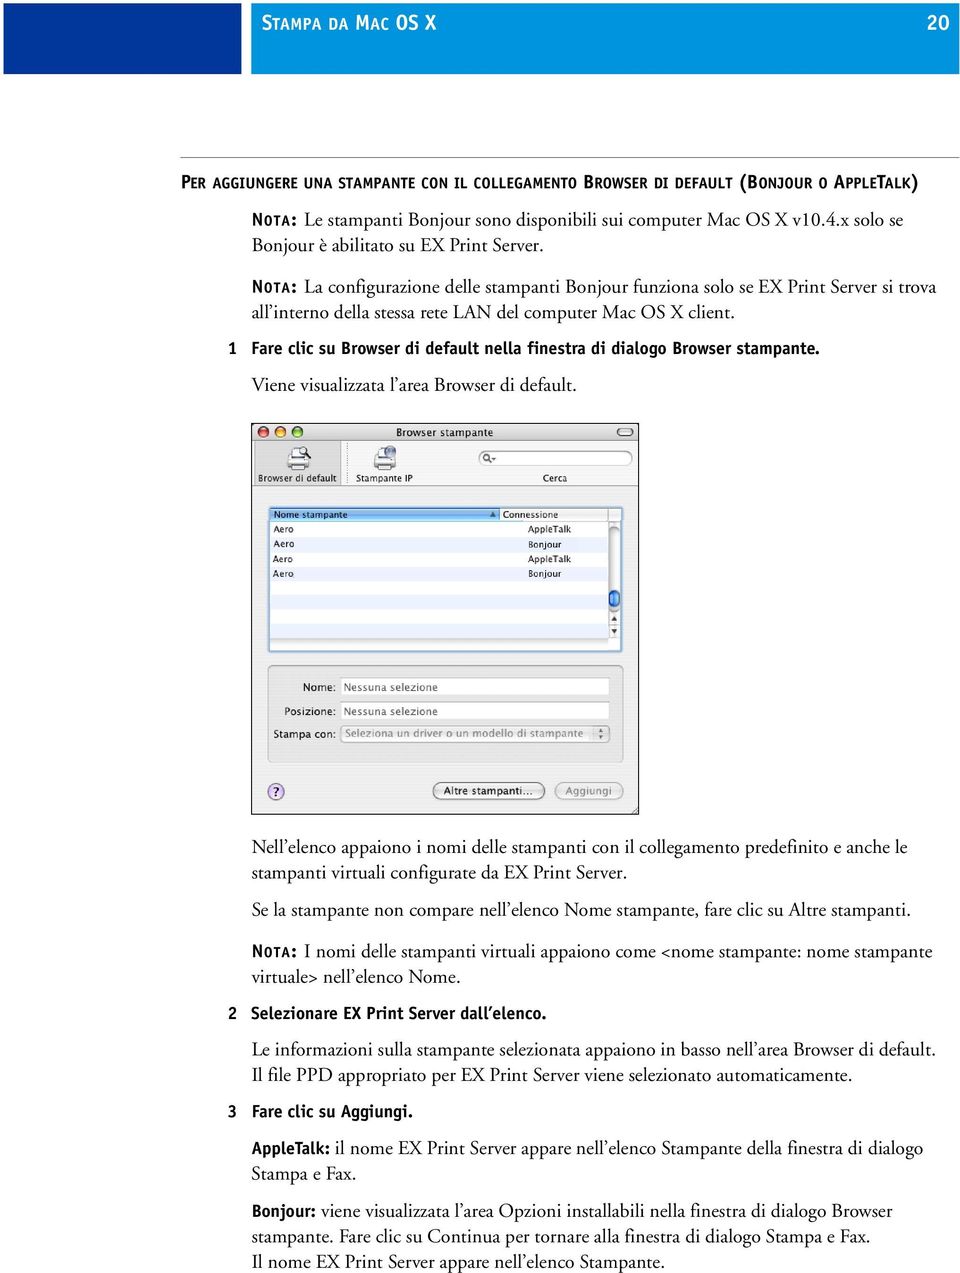 NOTA: La configurazione delle stampanti Bonjour funziona solo se EX Print Server si trova all interno della stessa rete LAN del computer Mac OS X client.